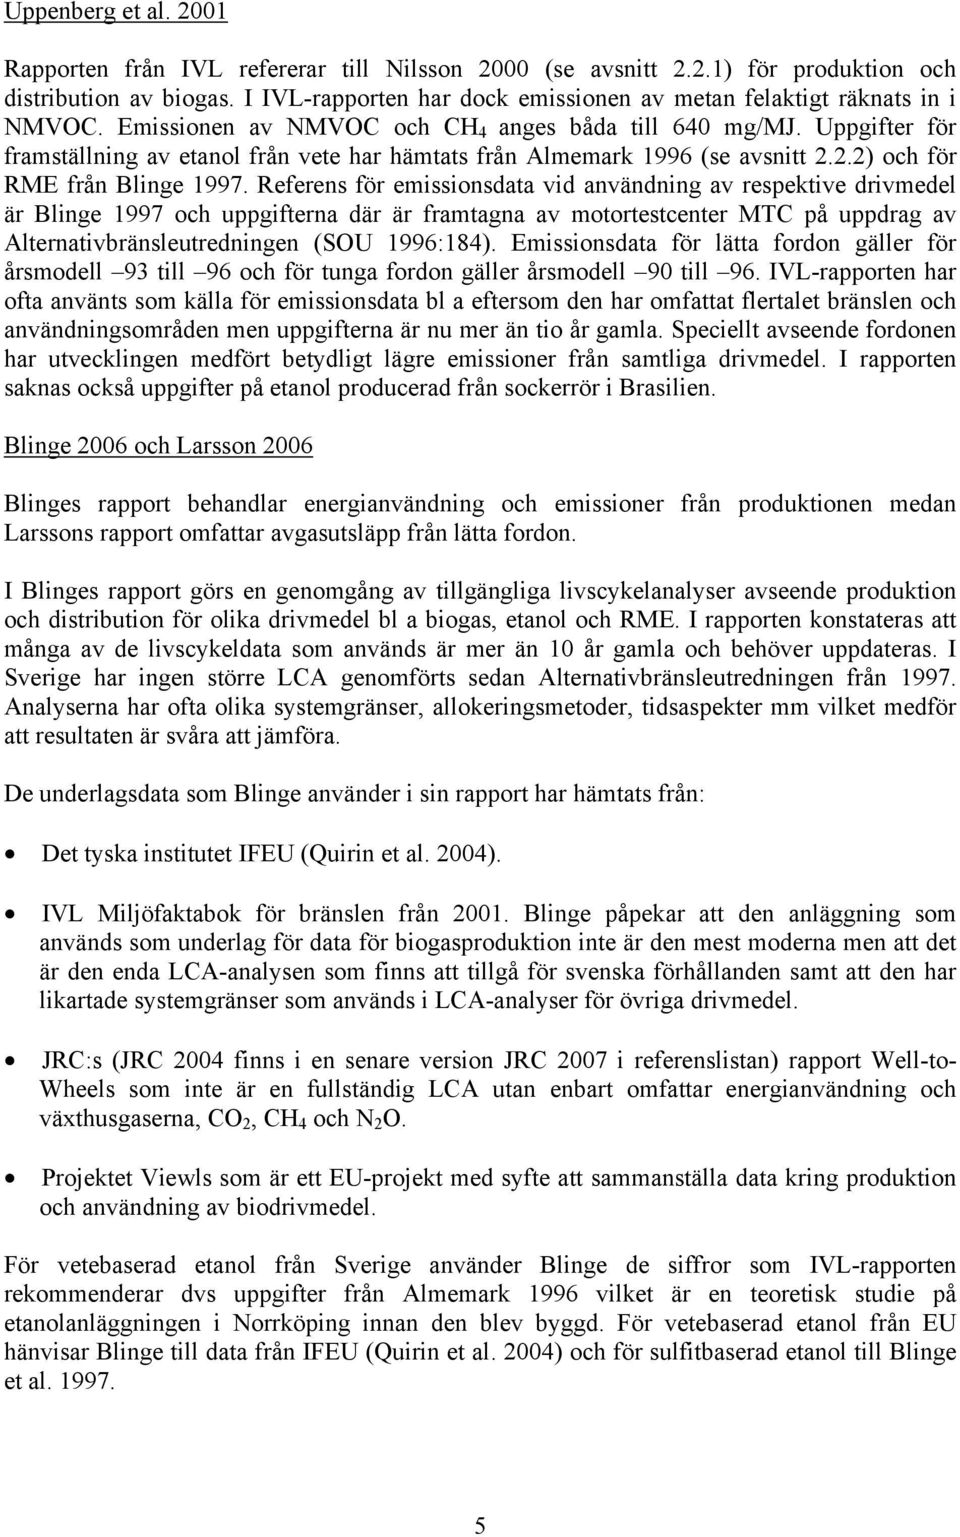 Uppgifter för framställning av etanol från vete har hämtats från Almemark 1996 (se avsnitt 2.2.2) och för RME från Blinge 1997.